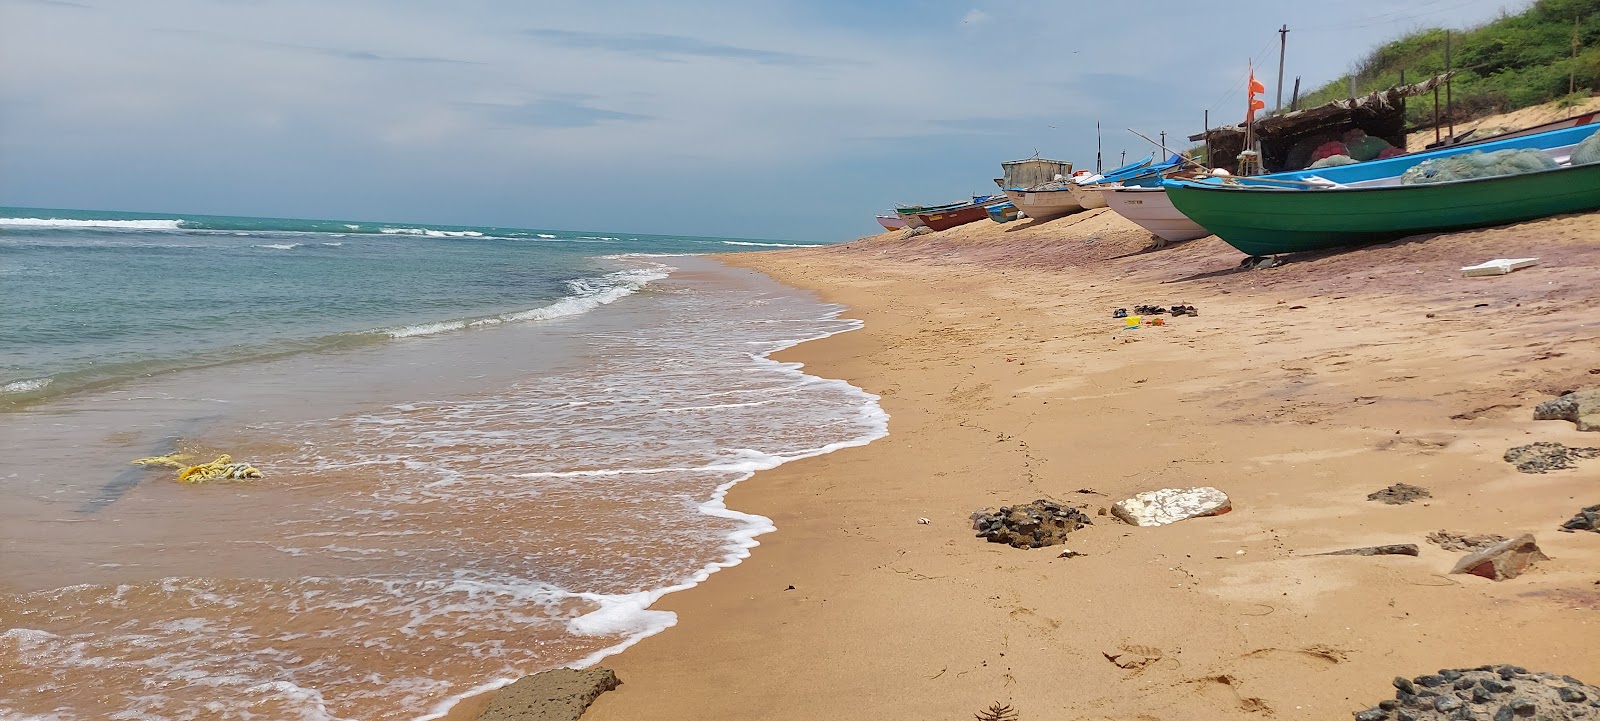 Foto de Kooduthalai beach com areia brilhante superfície